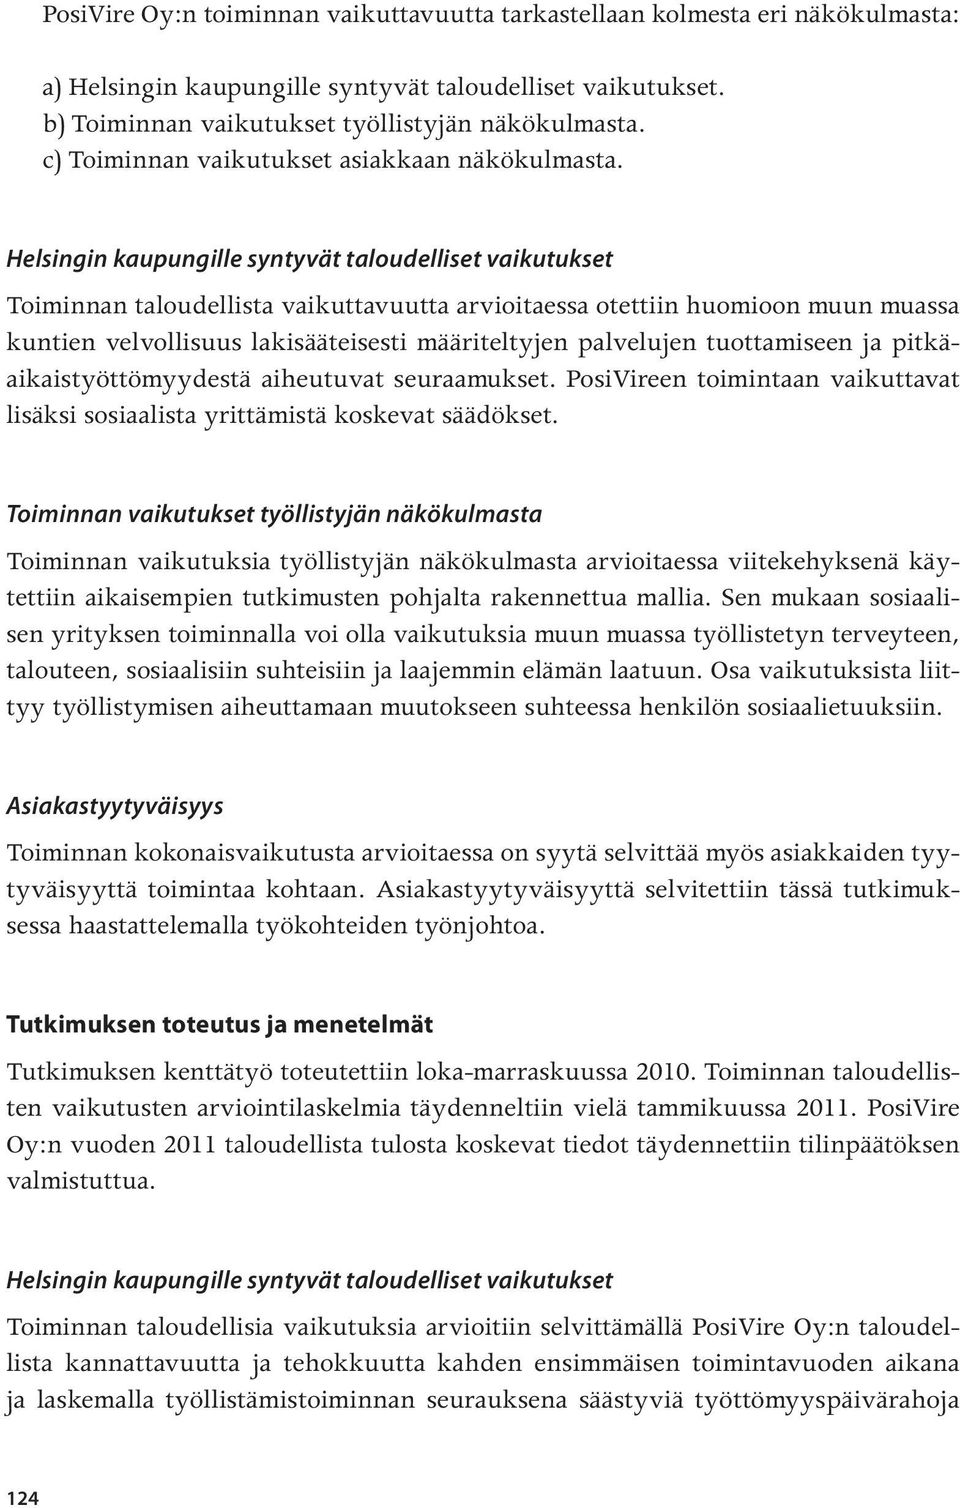 Helsingin kaupungille syntyvät taloudelliset vaikutukset Toiminnan taloudellista vaikuttavuutta arvioitaessa otettiin huomioon muun muassa kuntien velvollisuus lakisääteisesti määriteltyjen